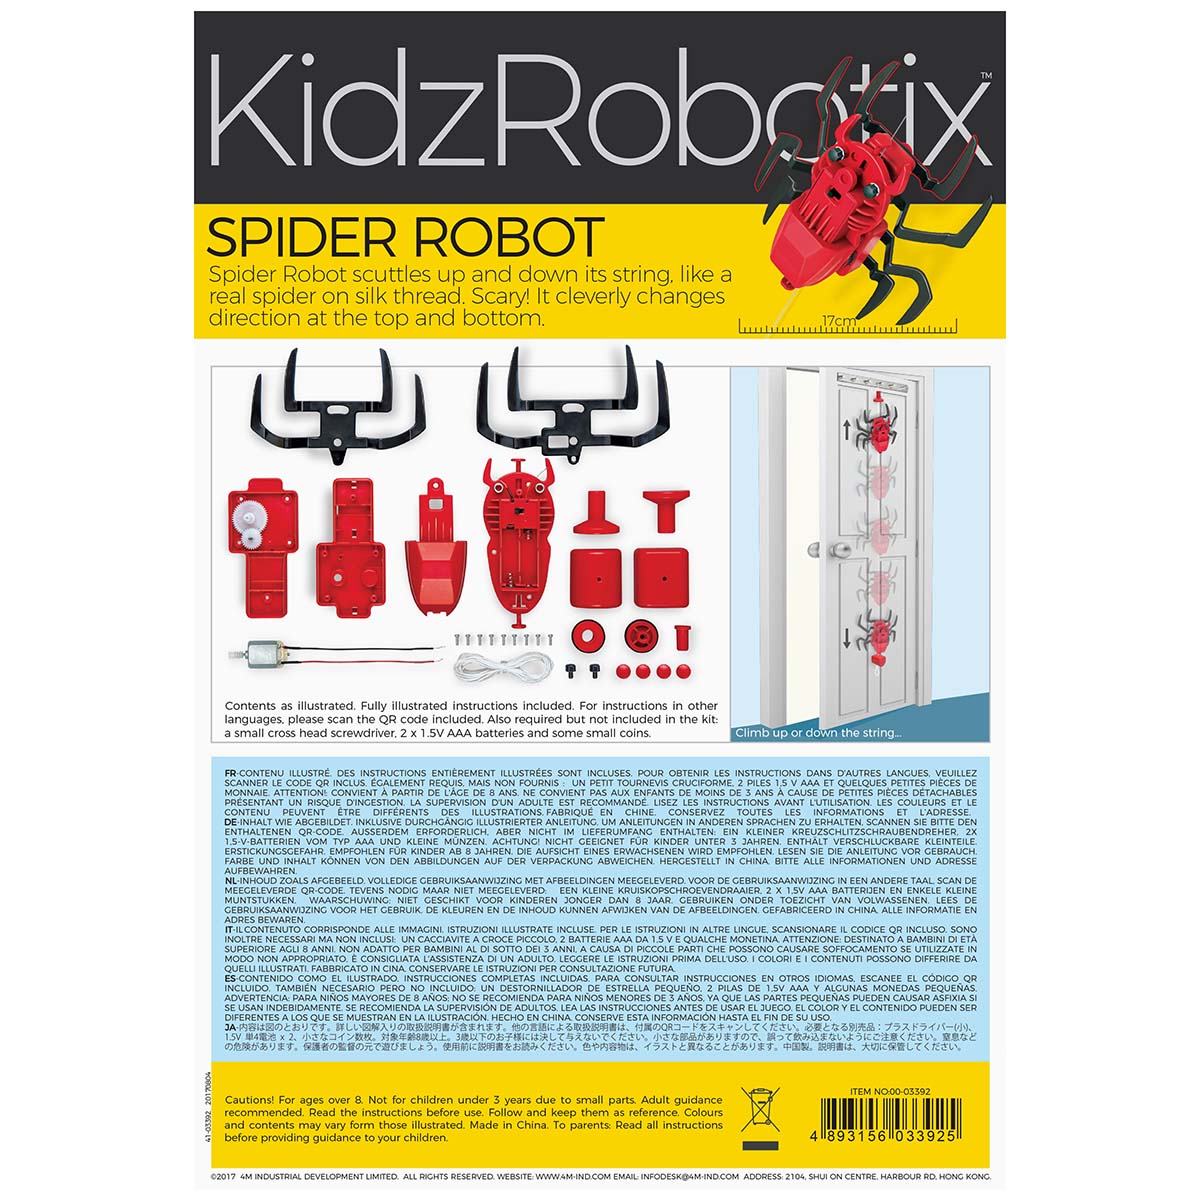 4M-Kidz Robotix Spider Robot 0/4